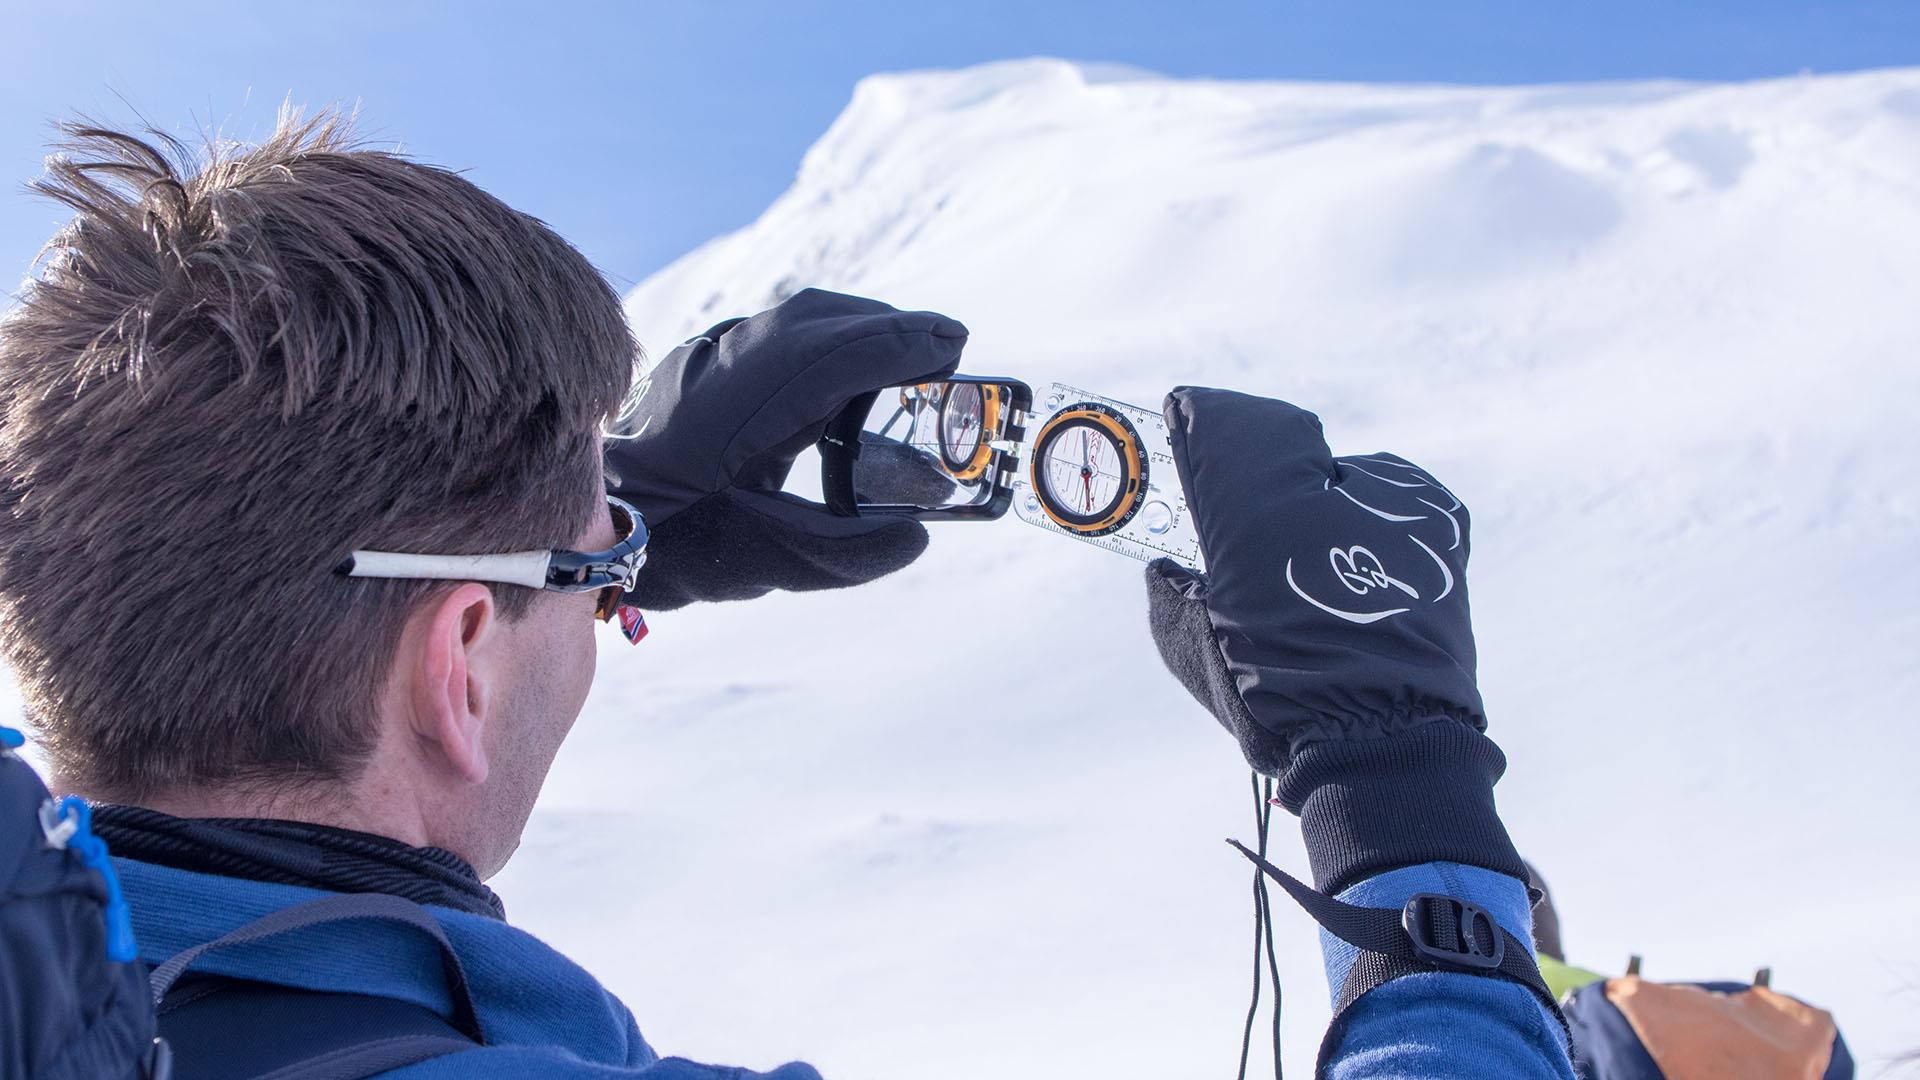 Eine Person benutzt einen Kompass, um den Neigungsgrad eines Schneehanges festzustellen.